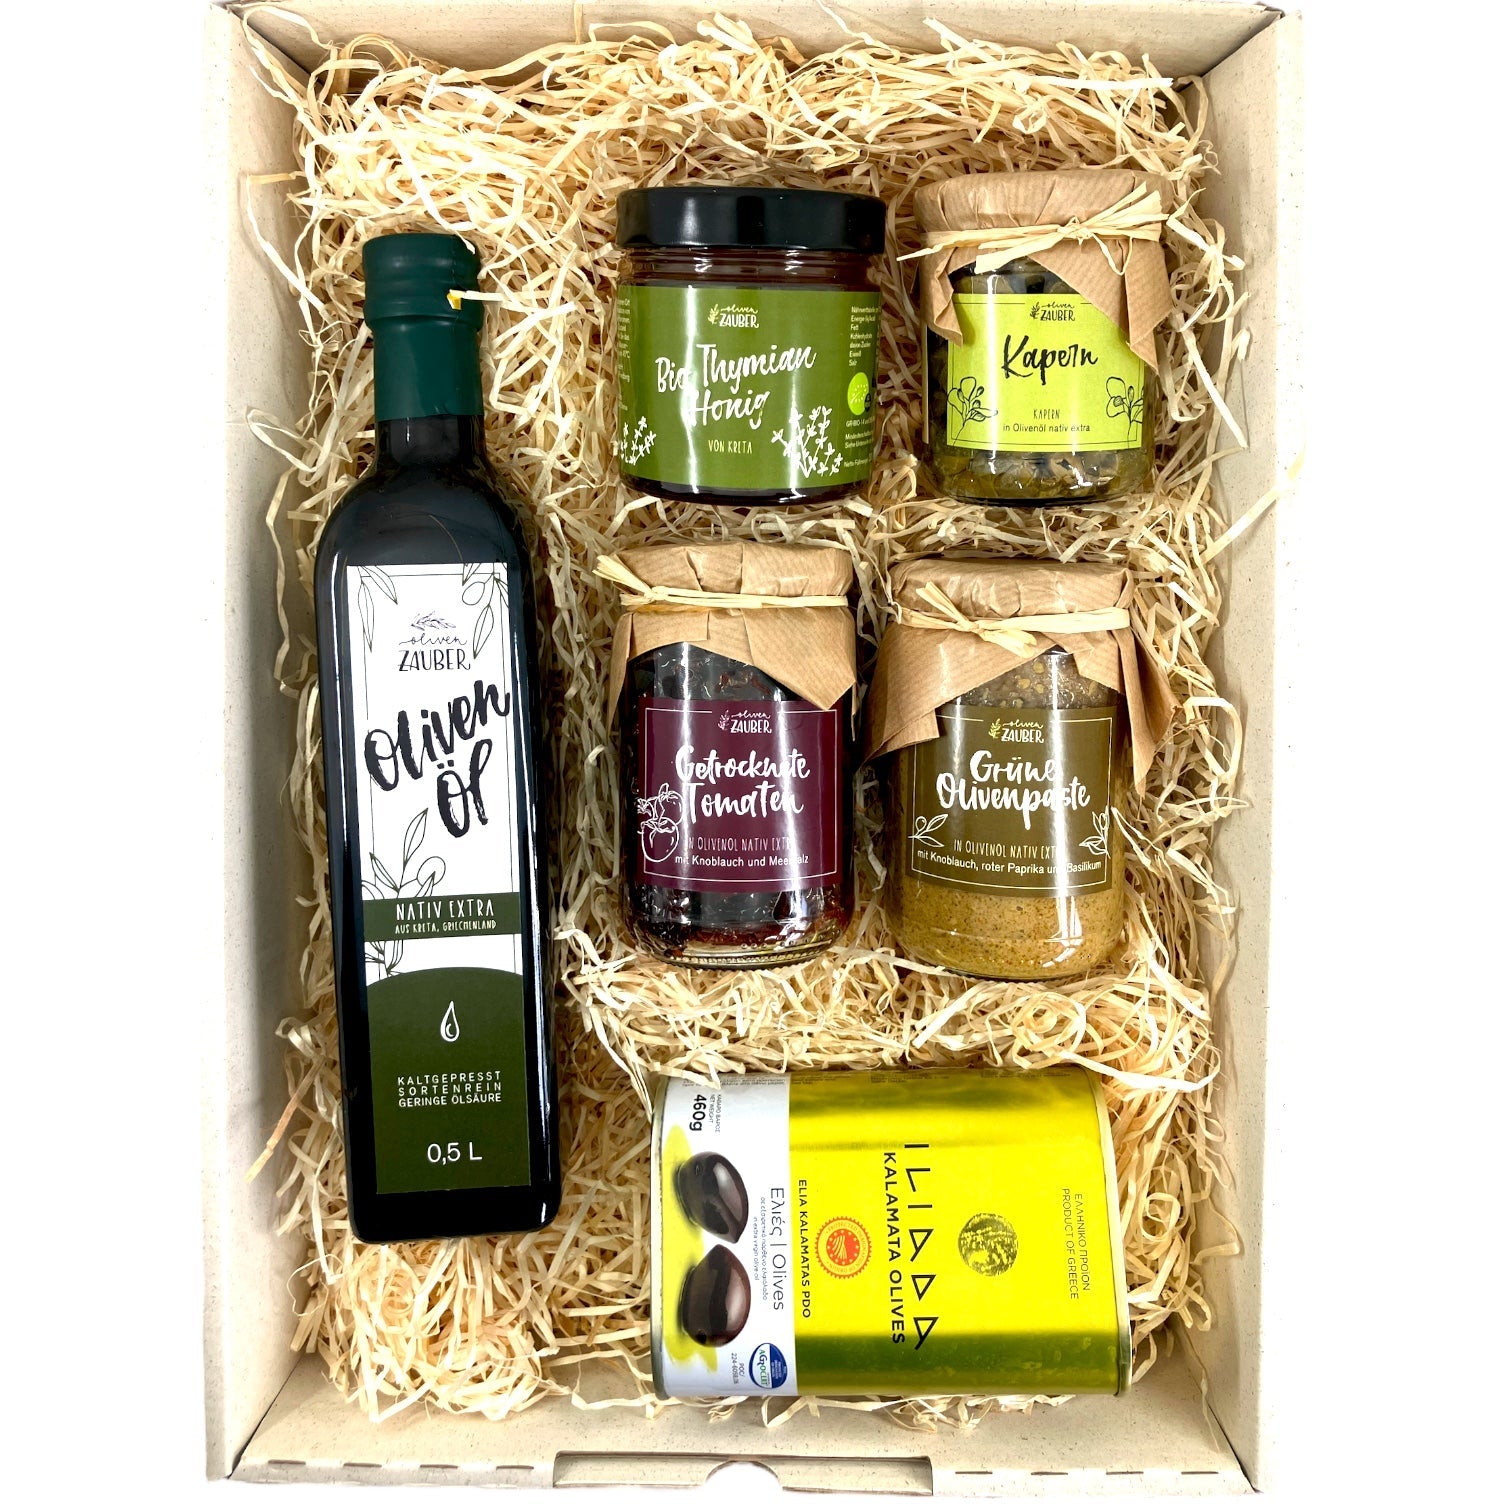 OlivenZauber Geschenkset “Griechische Spezialitäten” - OlivenZauber - Olivenöl neu erleben